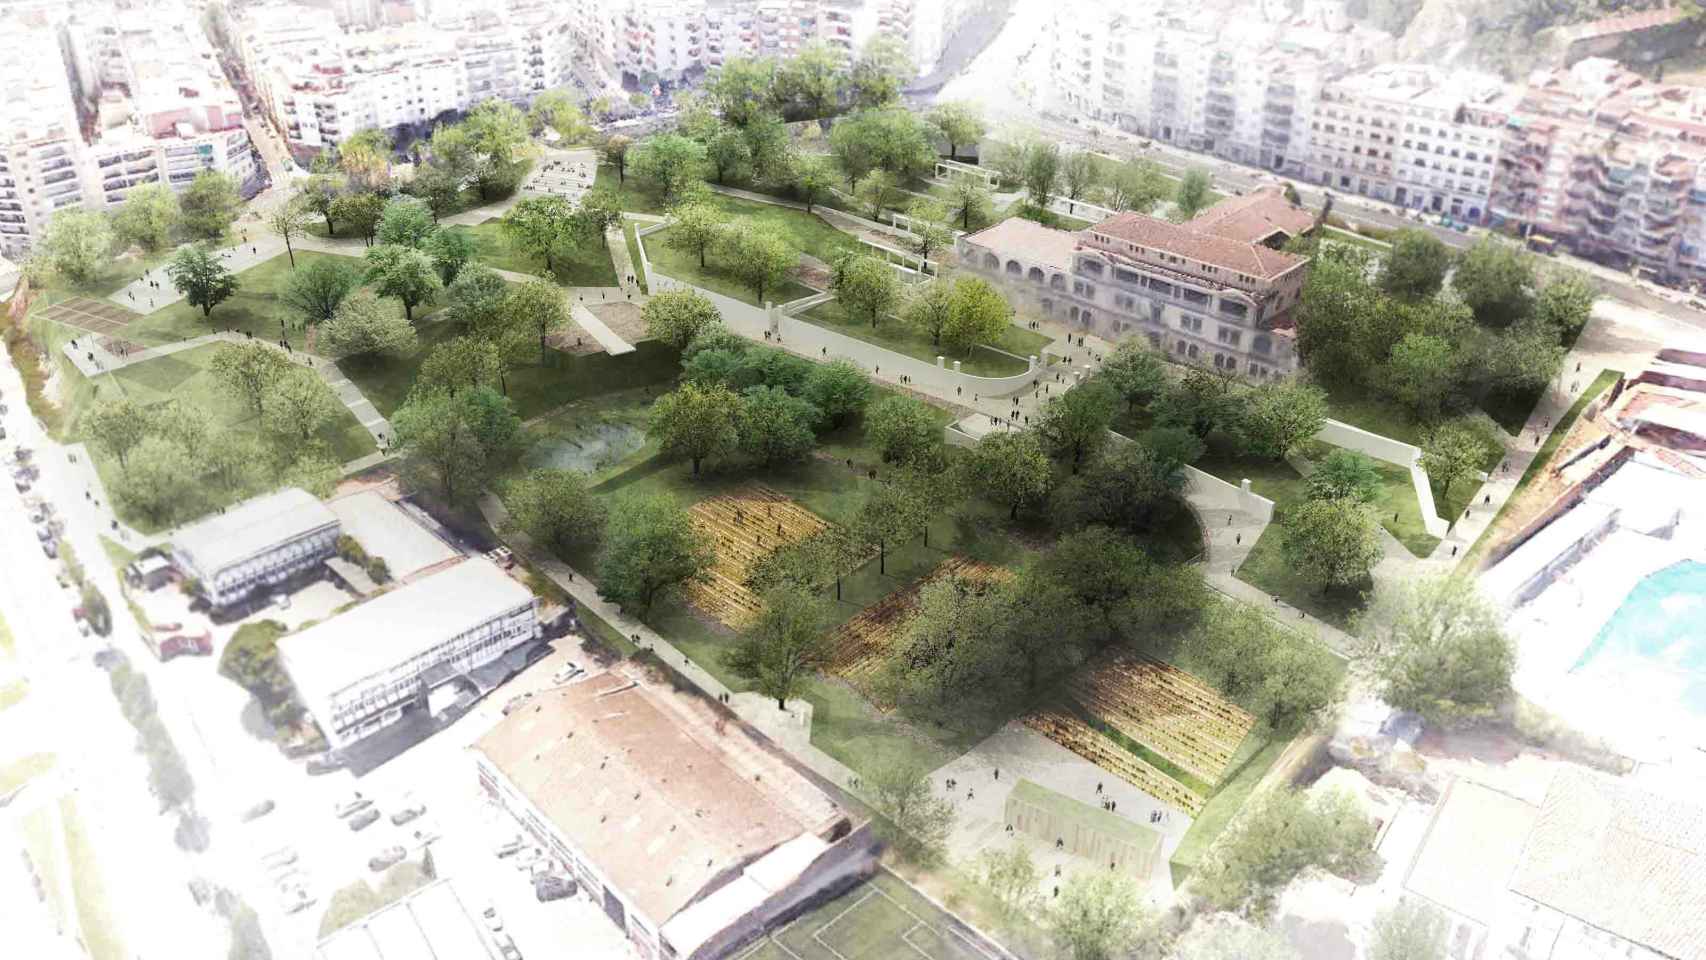 Maqueta de los jardines Doctor Pla i Armengol del distrito de Horta-Guinardó / Ayuntamiento de Barcelona